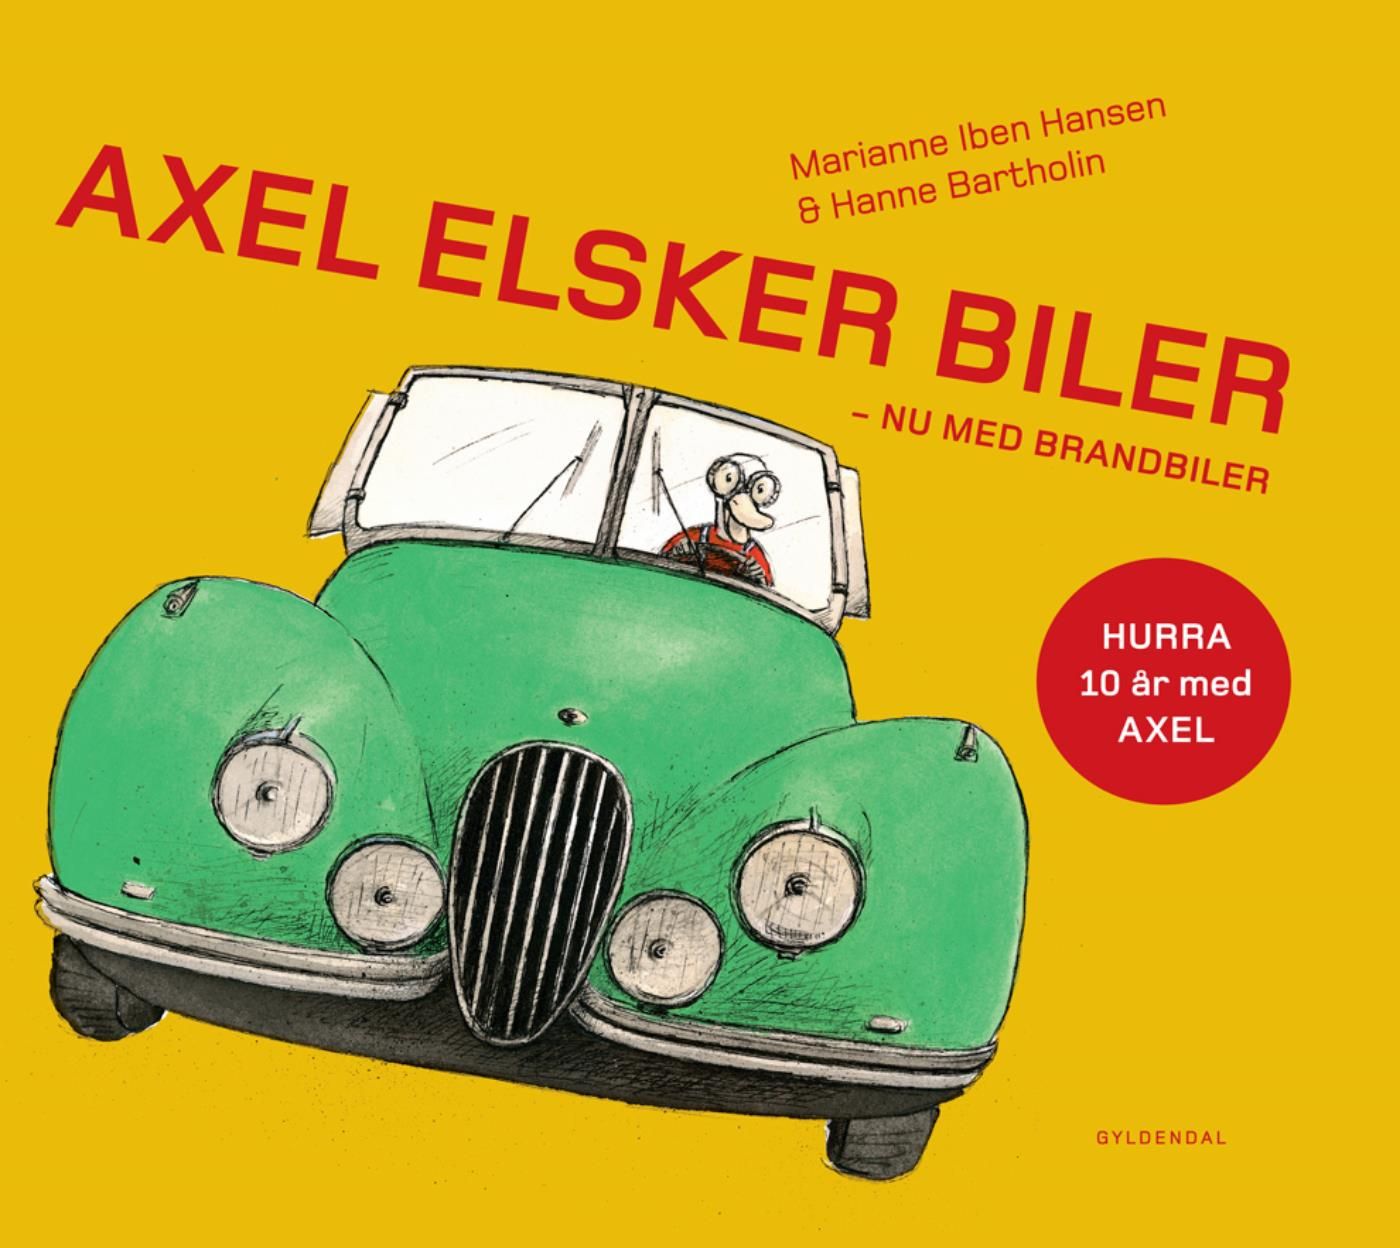 Axel elsker biler - Lyt&læs, e-bog af Hanne Bartholin, Marianne Iben Hansen